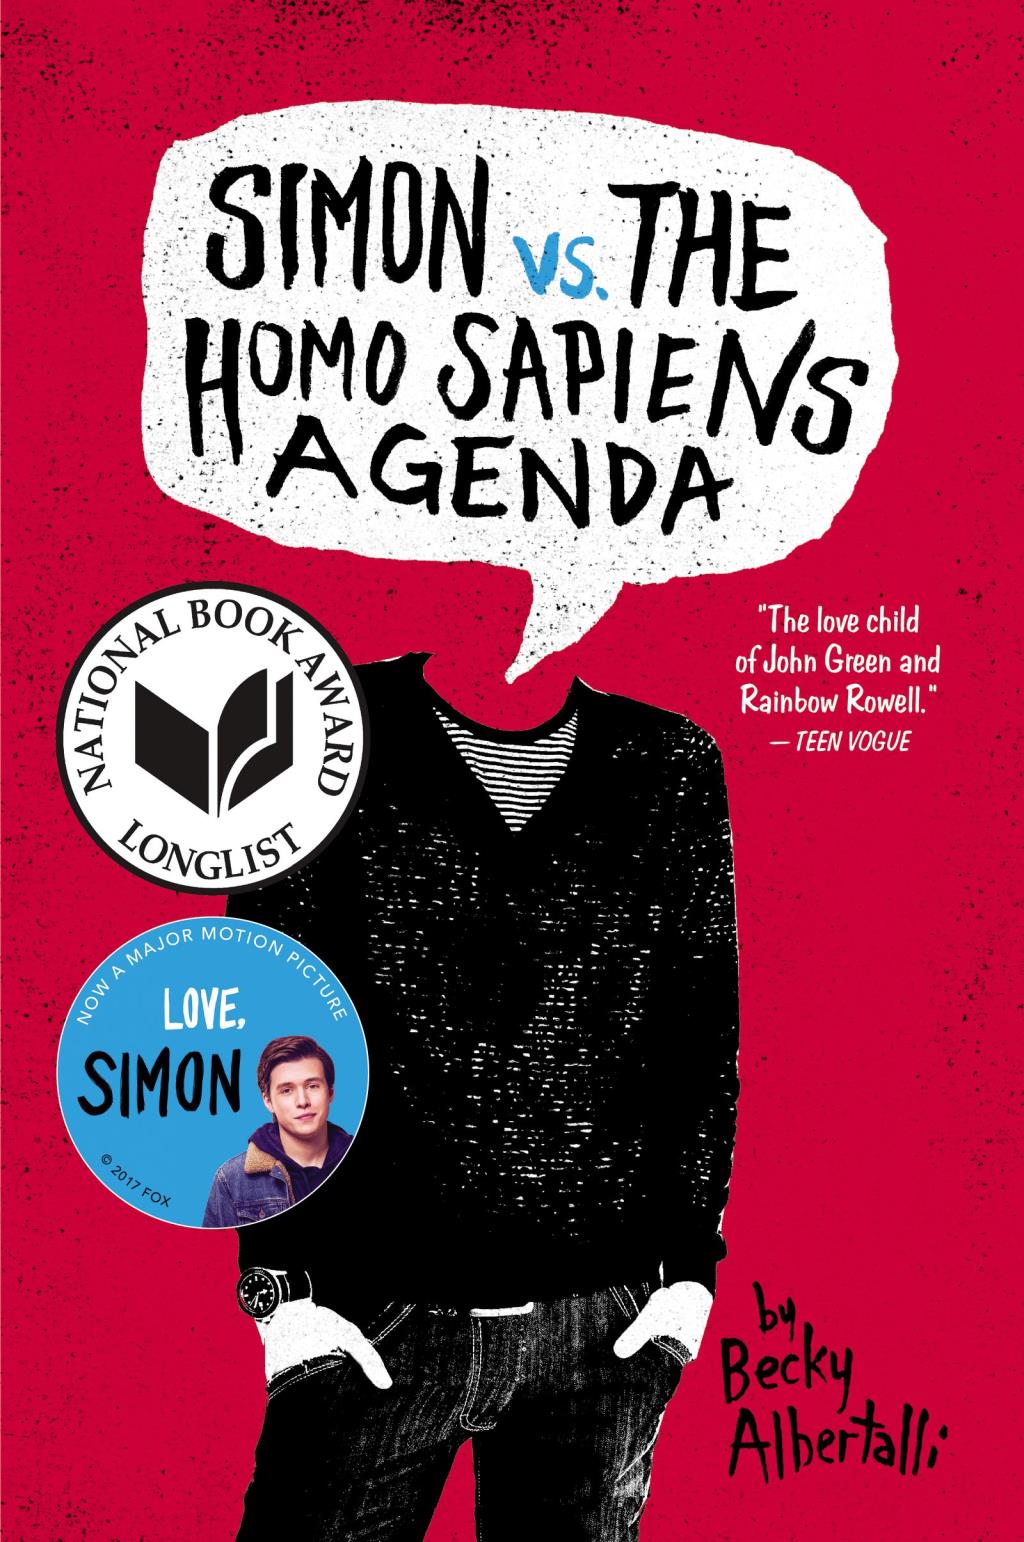 simon vs the homosapiens agenda book cover